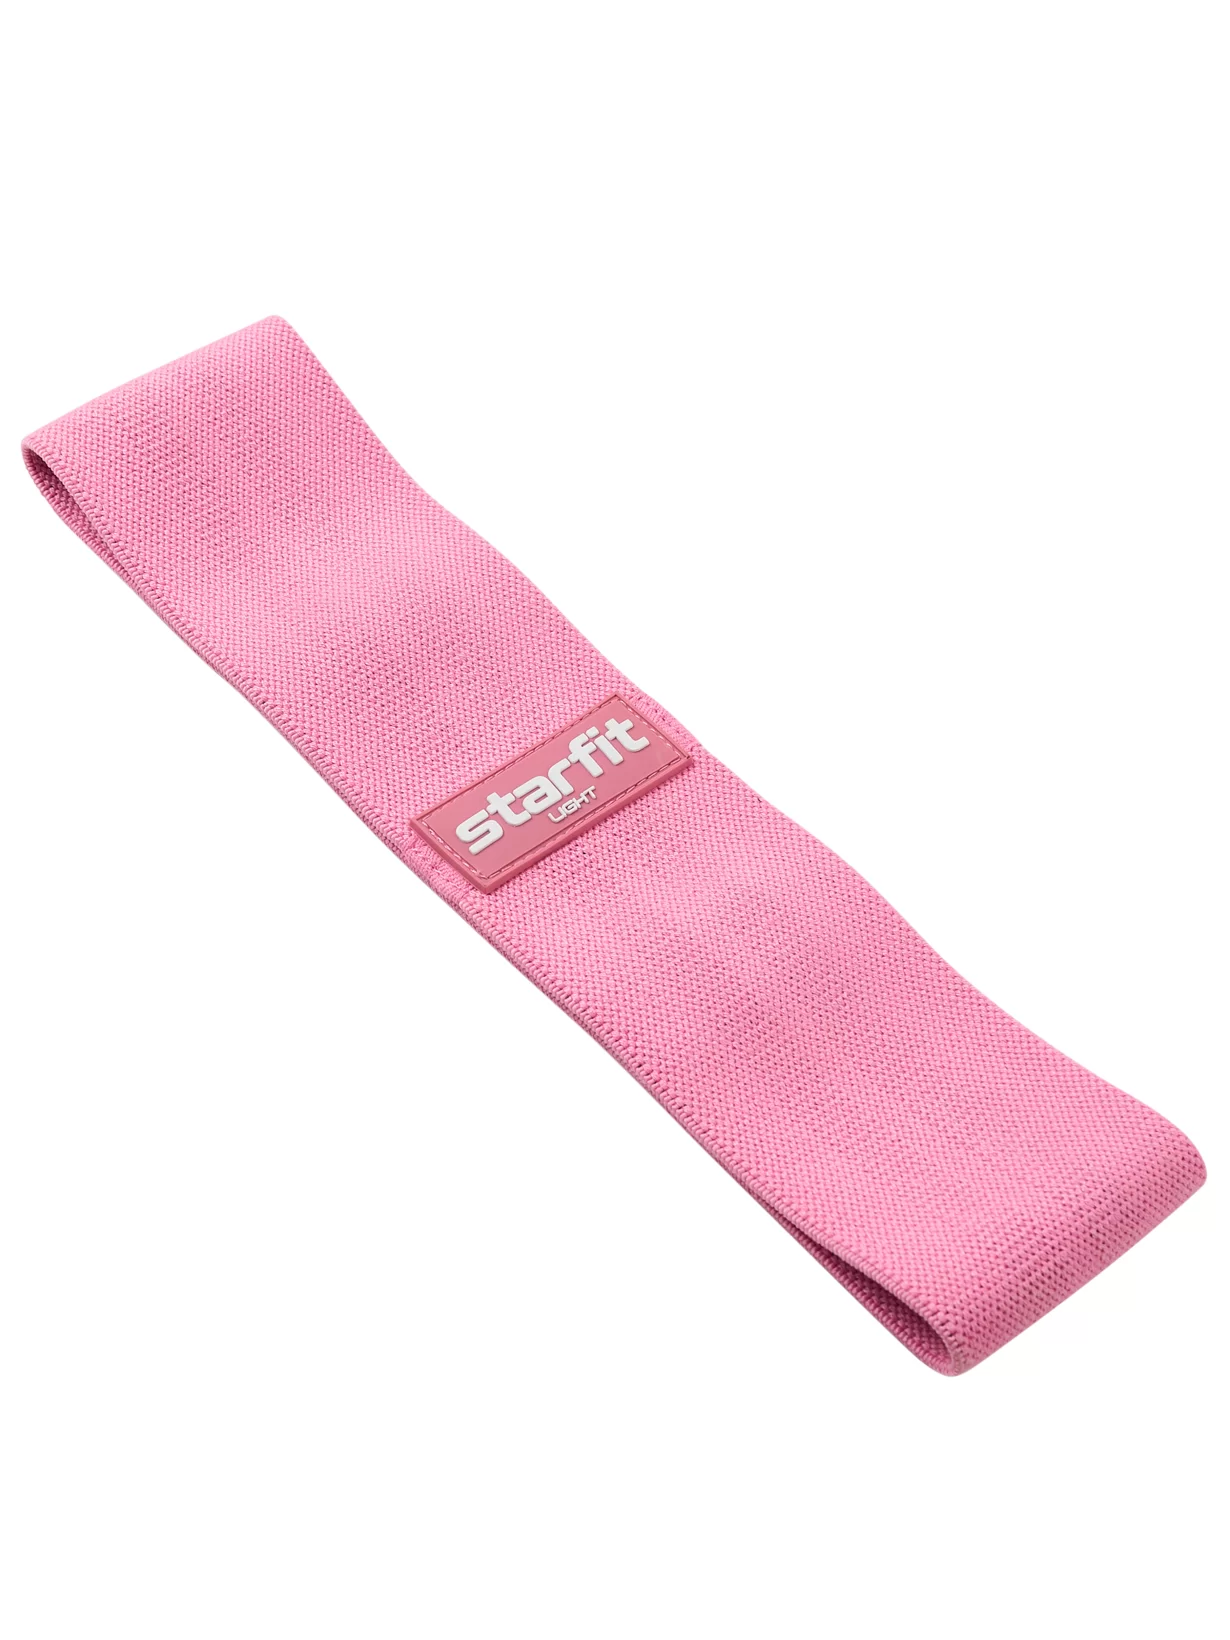 Реальное фото Мини-эспандер StarFit ES-204 низкая нагрузка, текстиль розовый пастель ЦБ-00001589 от магазина СпортСЕ